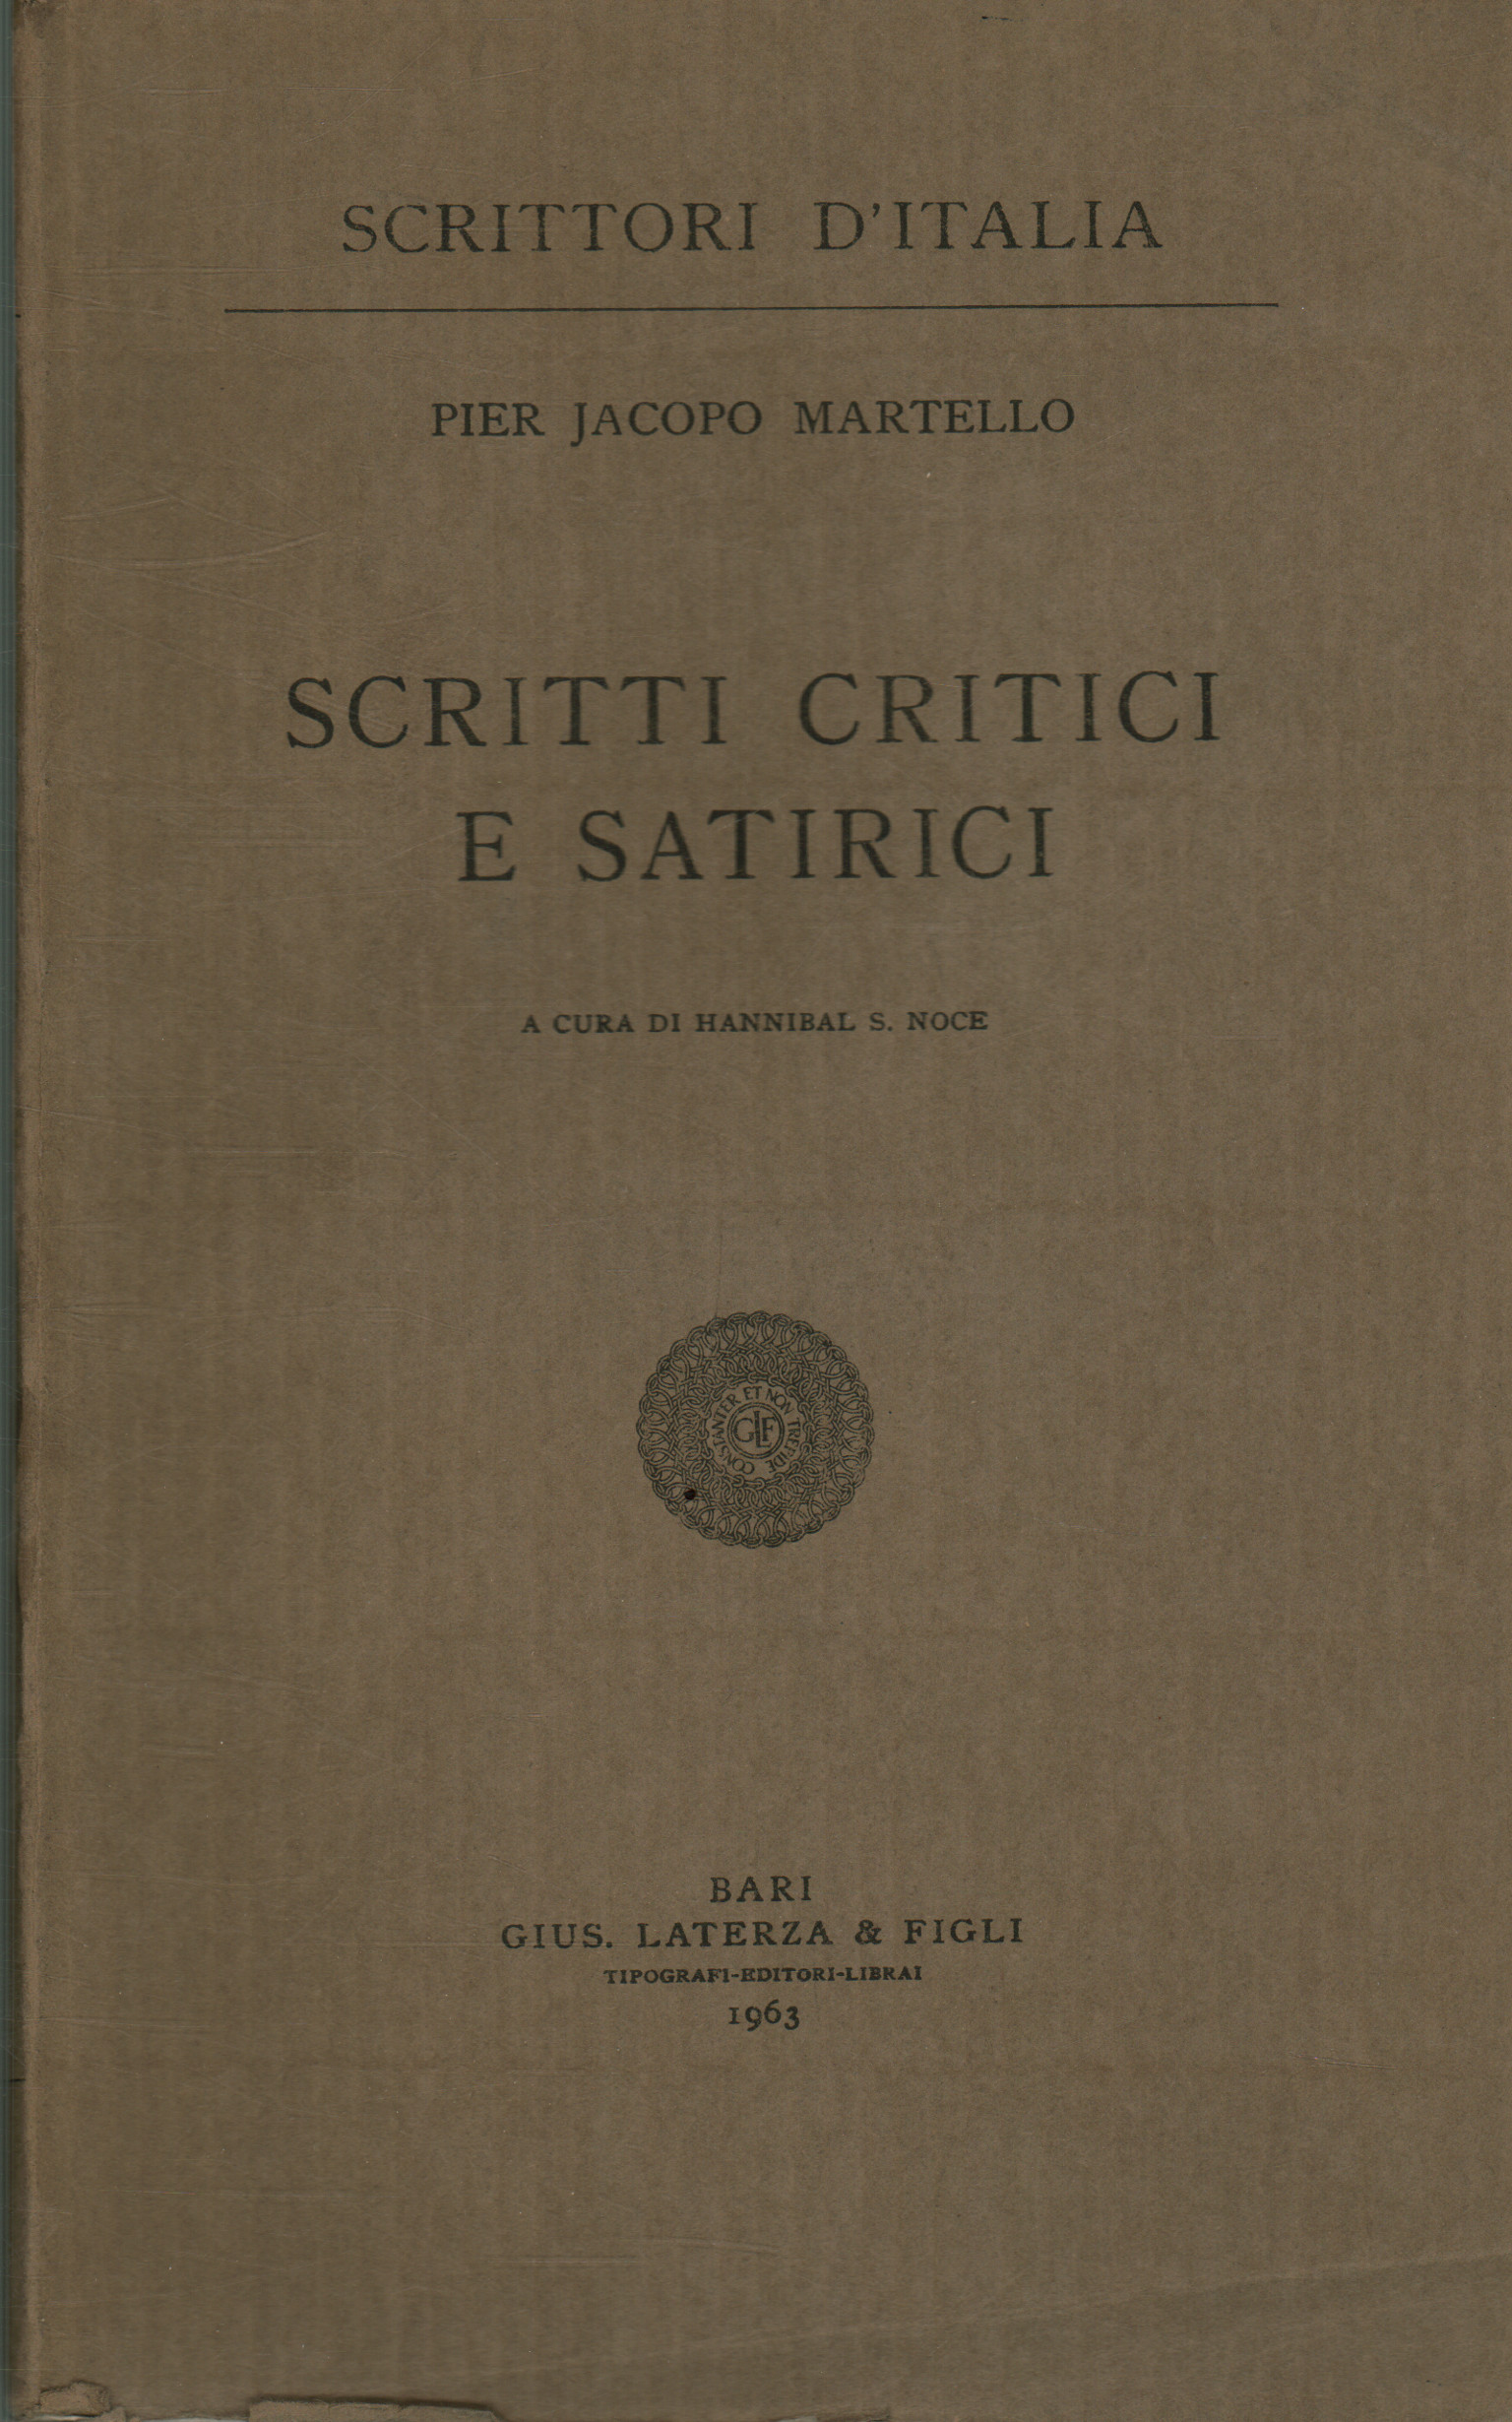 Scritti critici e satirici, Pier Jacopo Martello